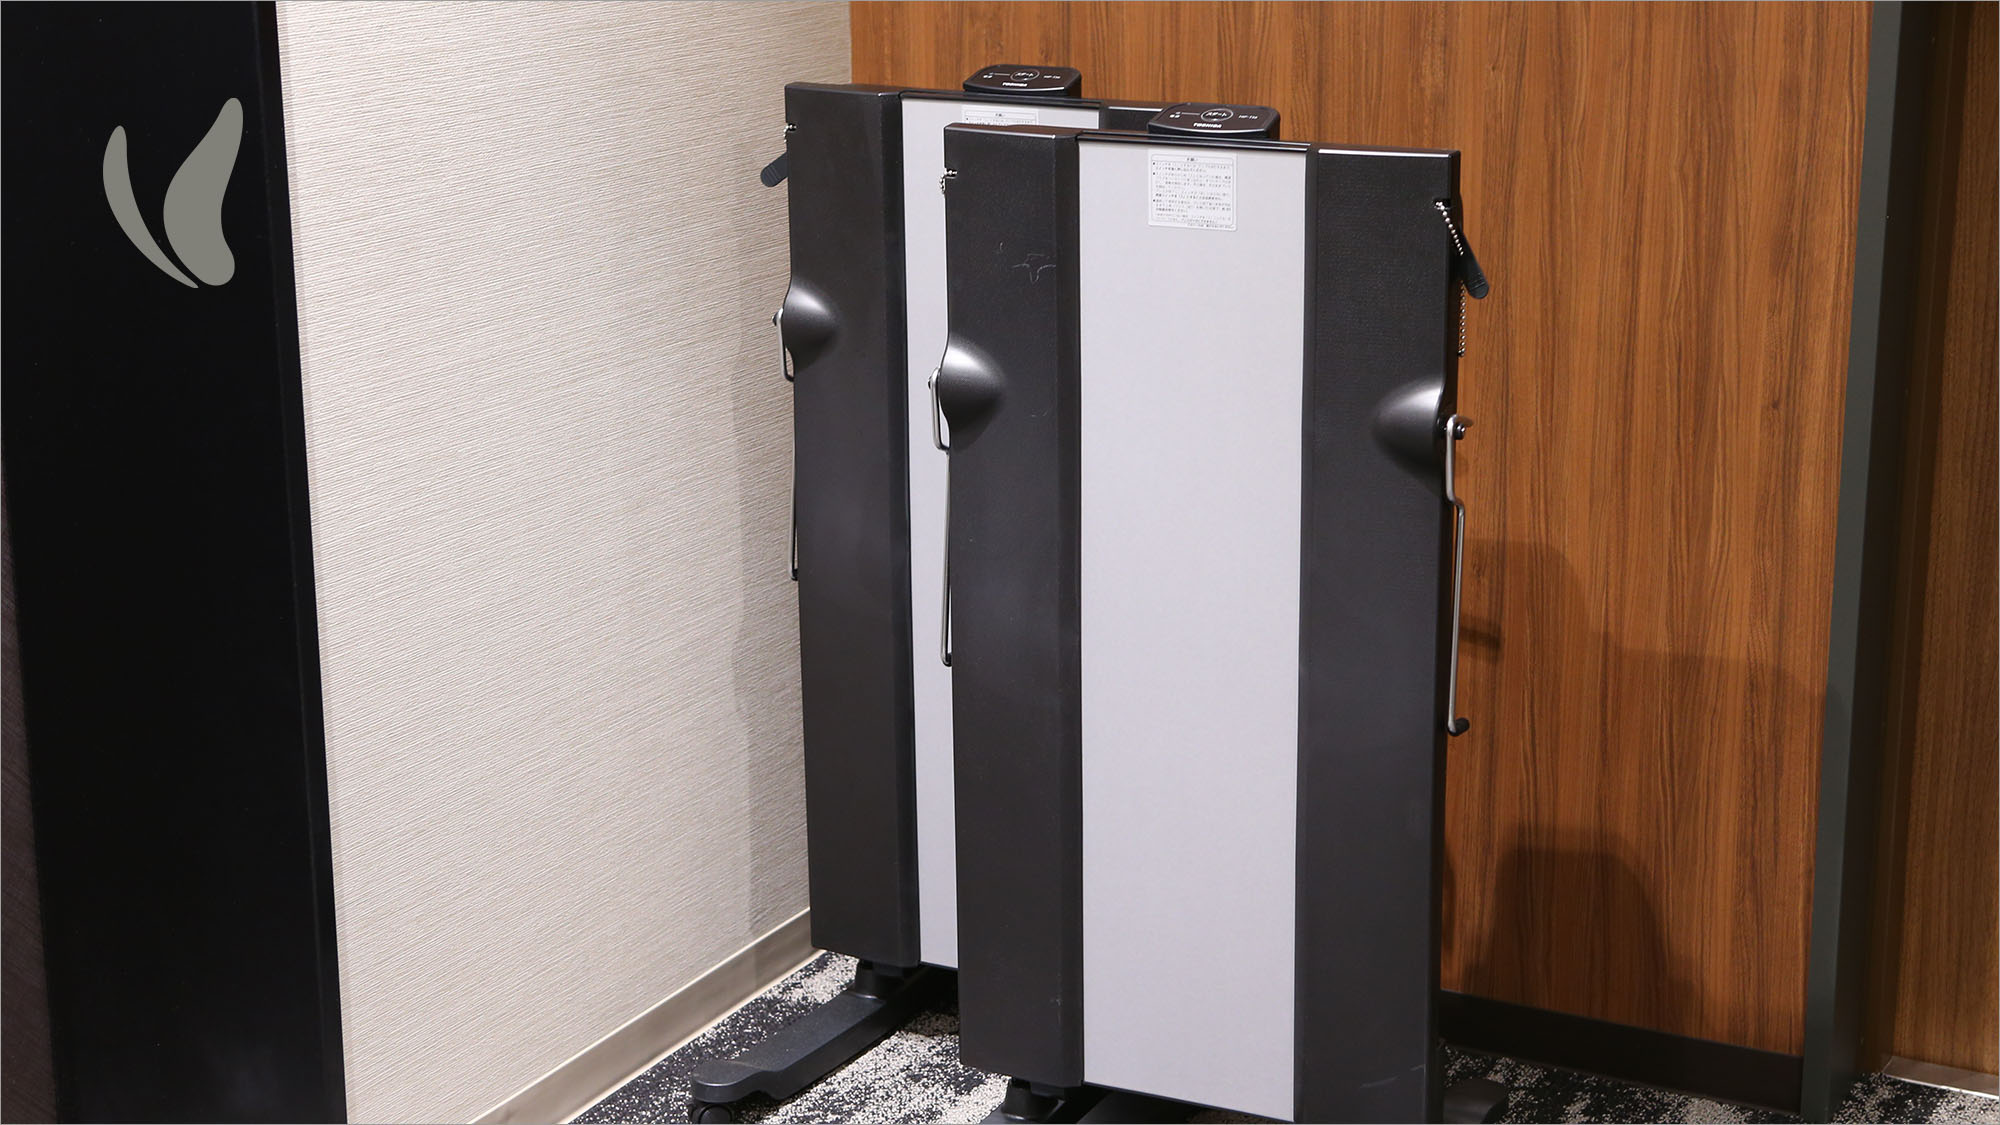 ズボンプレッサーは各階エレベーターホールにて無料貸出しております。